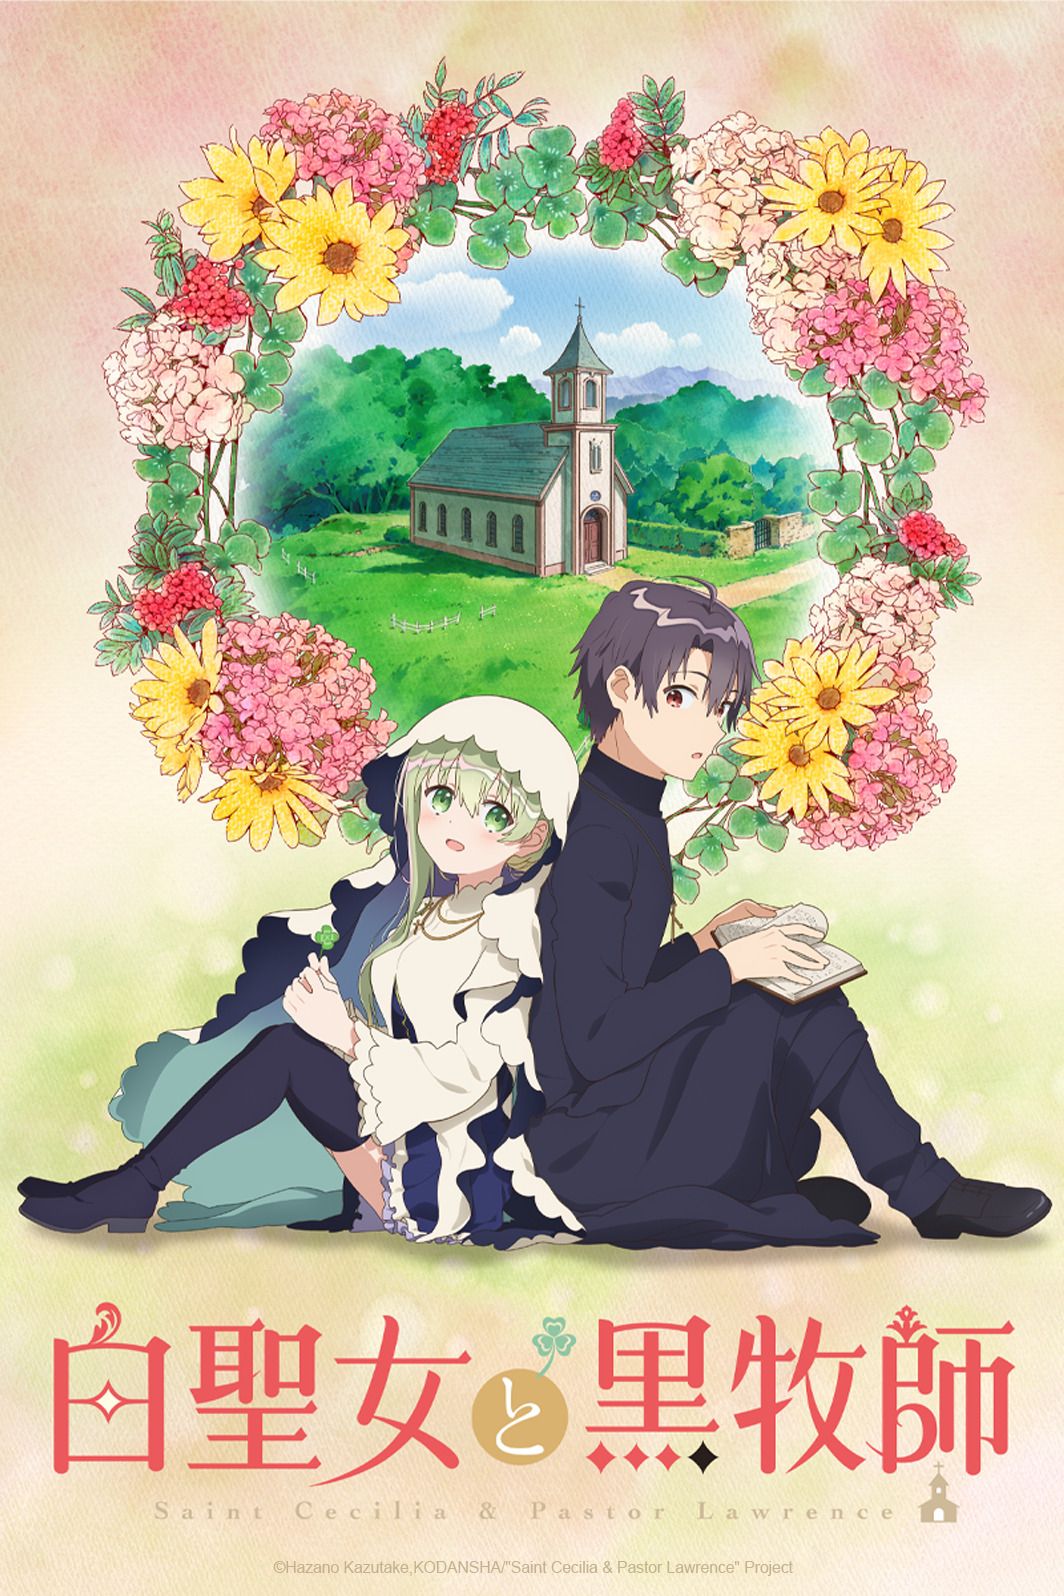 Anime - Sainte Cecilia et le Pasteur Lawrence - Episode #2 - Ce qu'ils protègent0